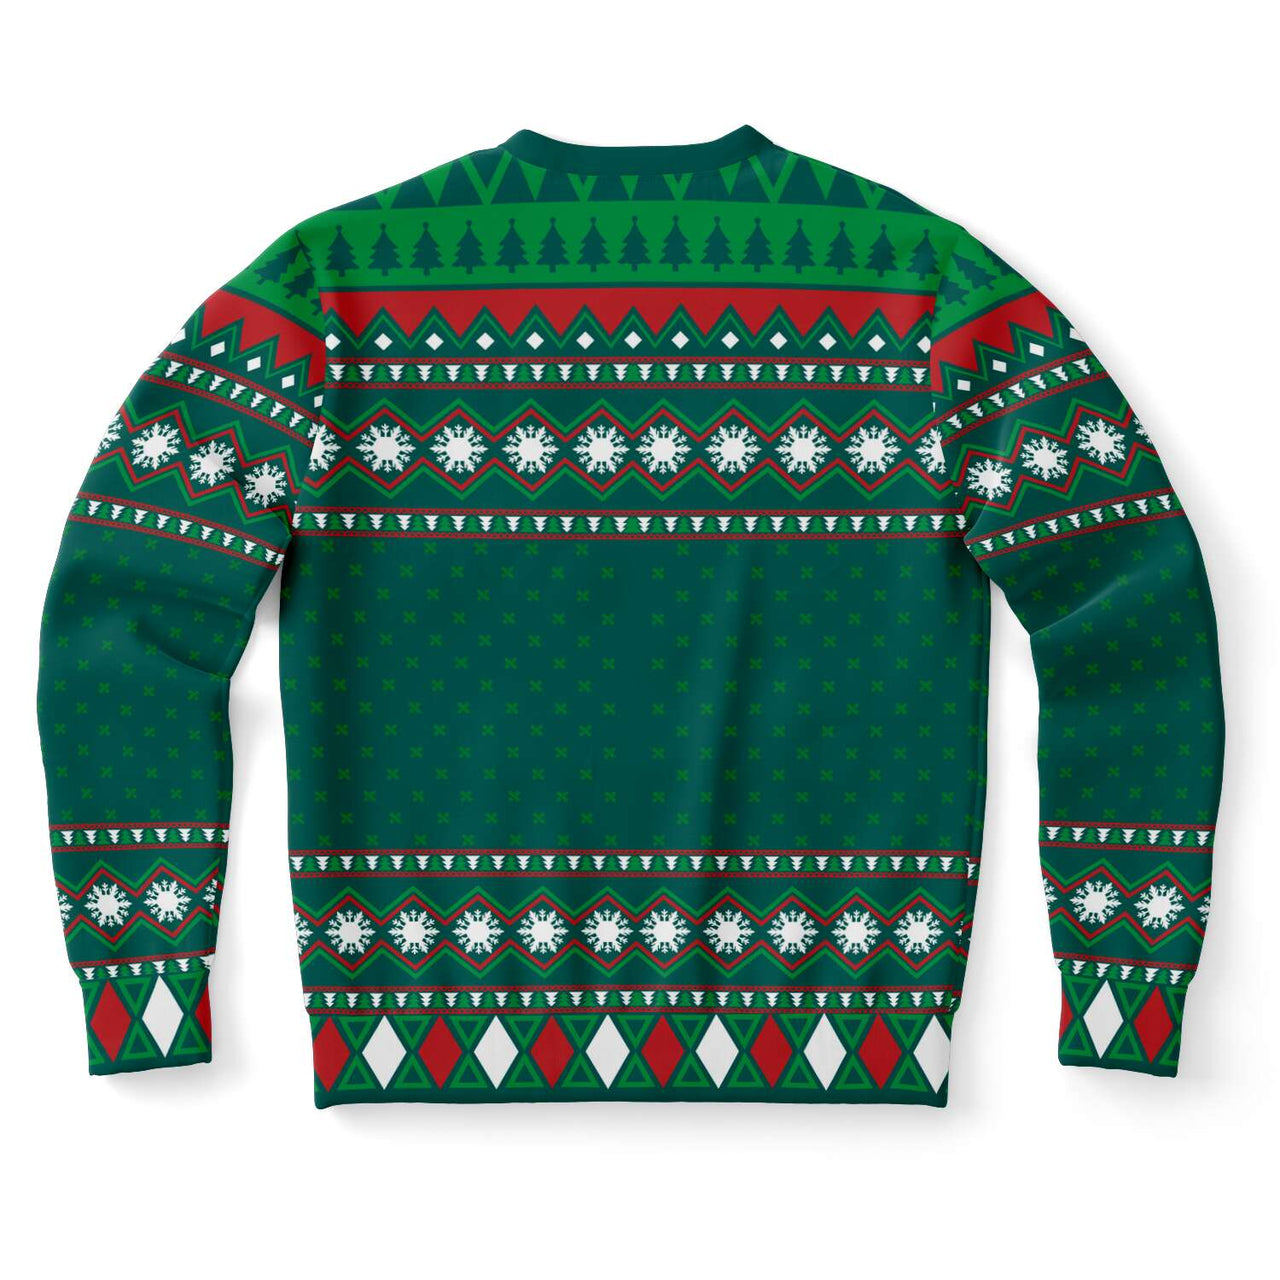 Ugly Christmas Sweatshirt - Bowling Strike